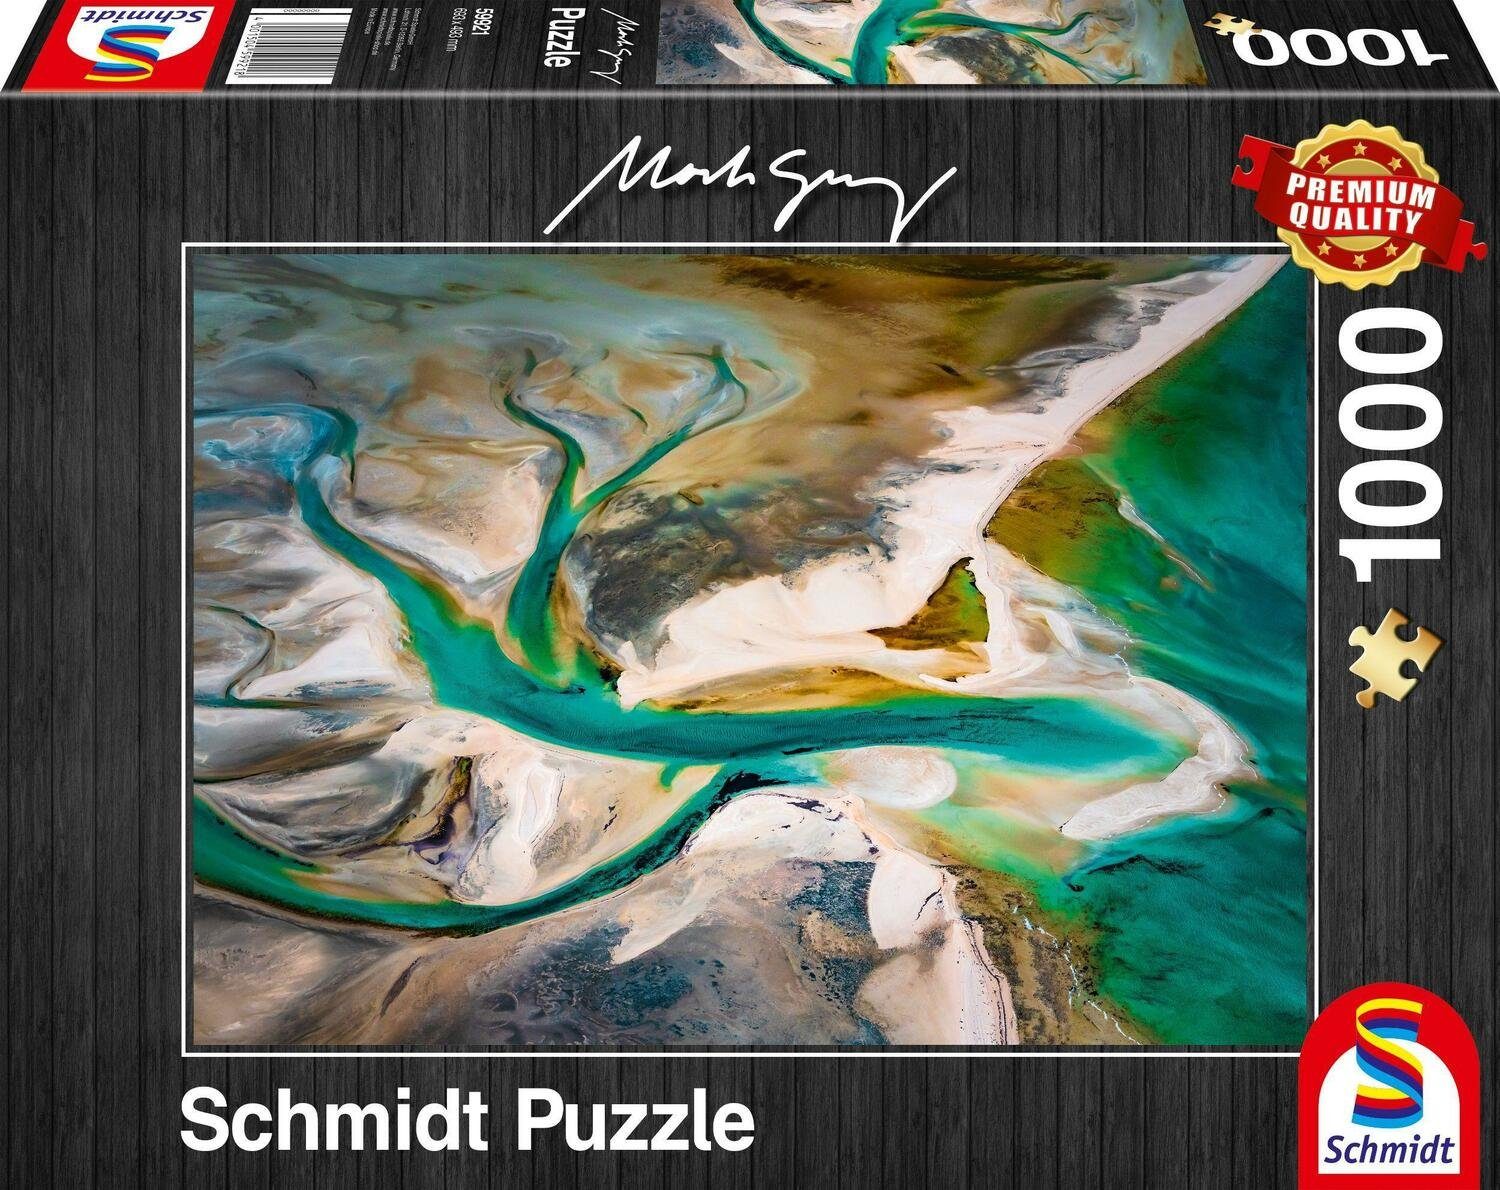 Schmidt Spiele Puzzle Verschmelzung Puzzle 1.000 Teile, 1000 Puzzleteile